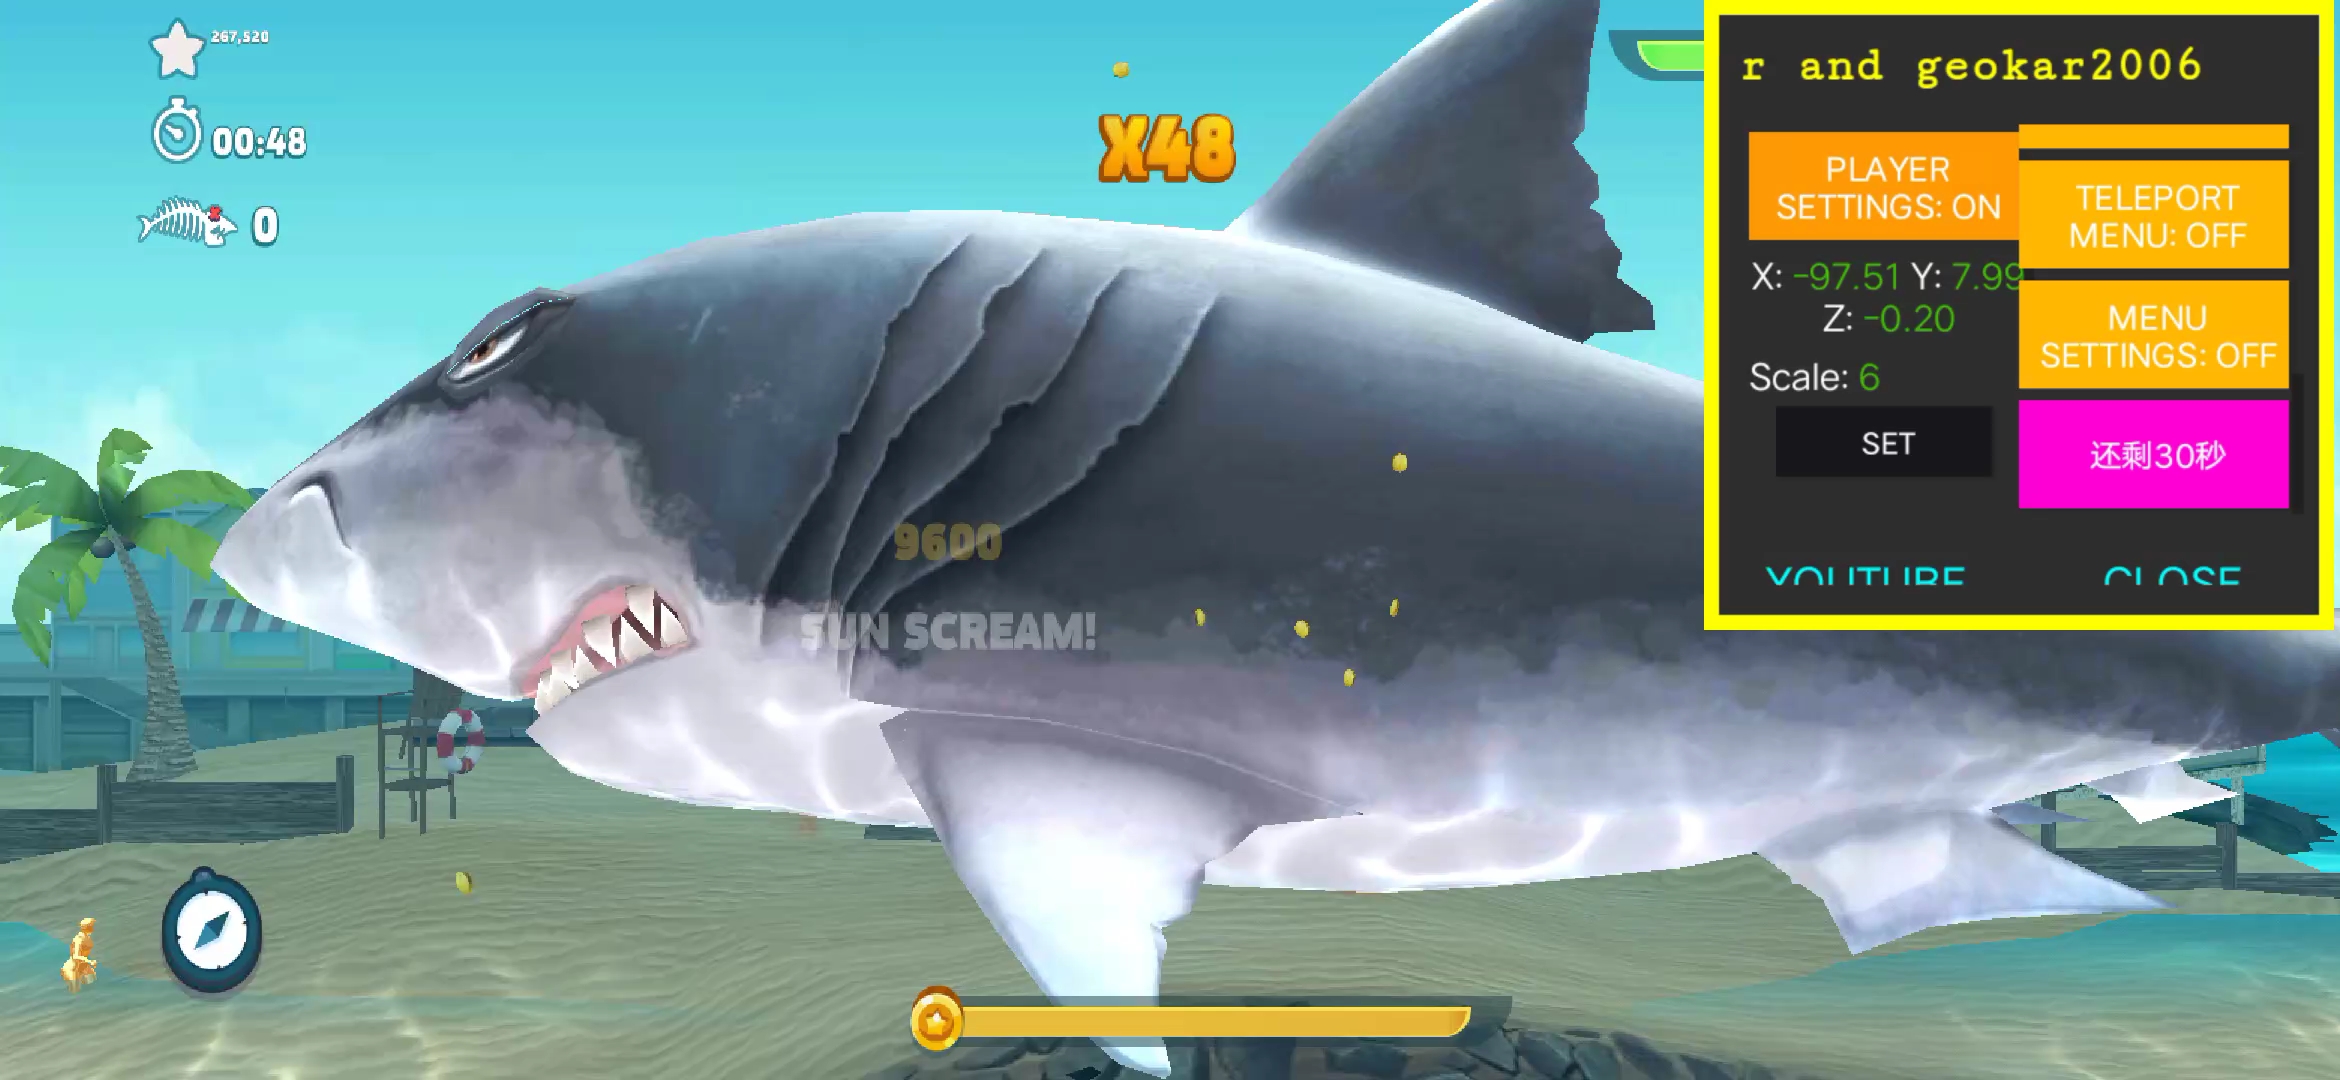 饥饿鲨古巨齿鲨图片